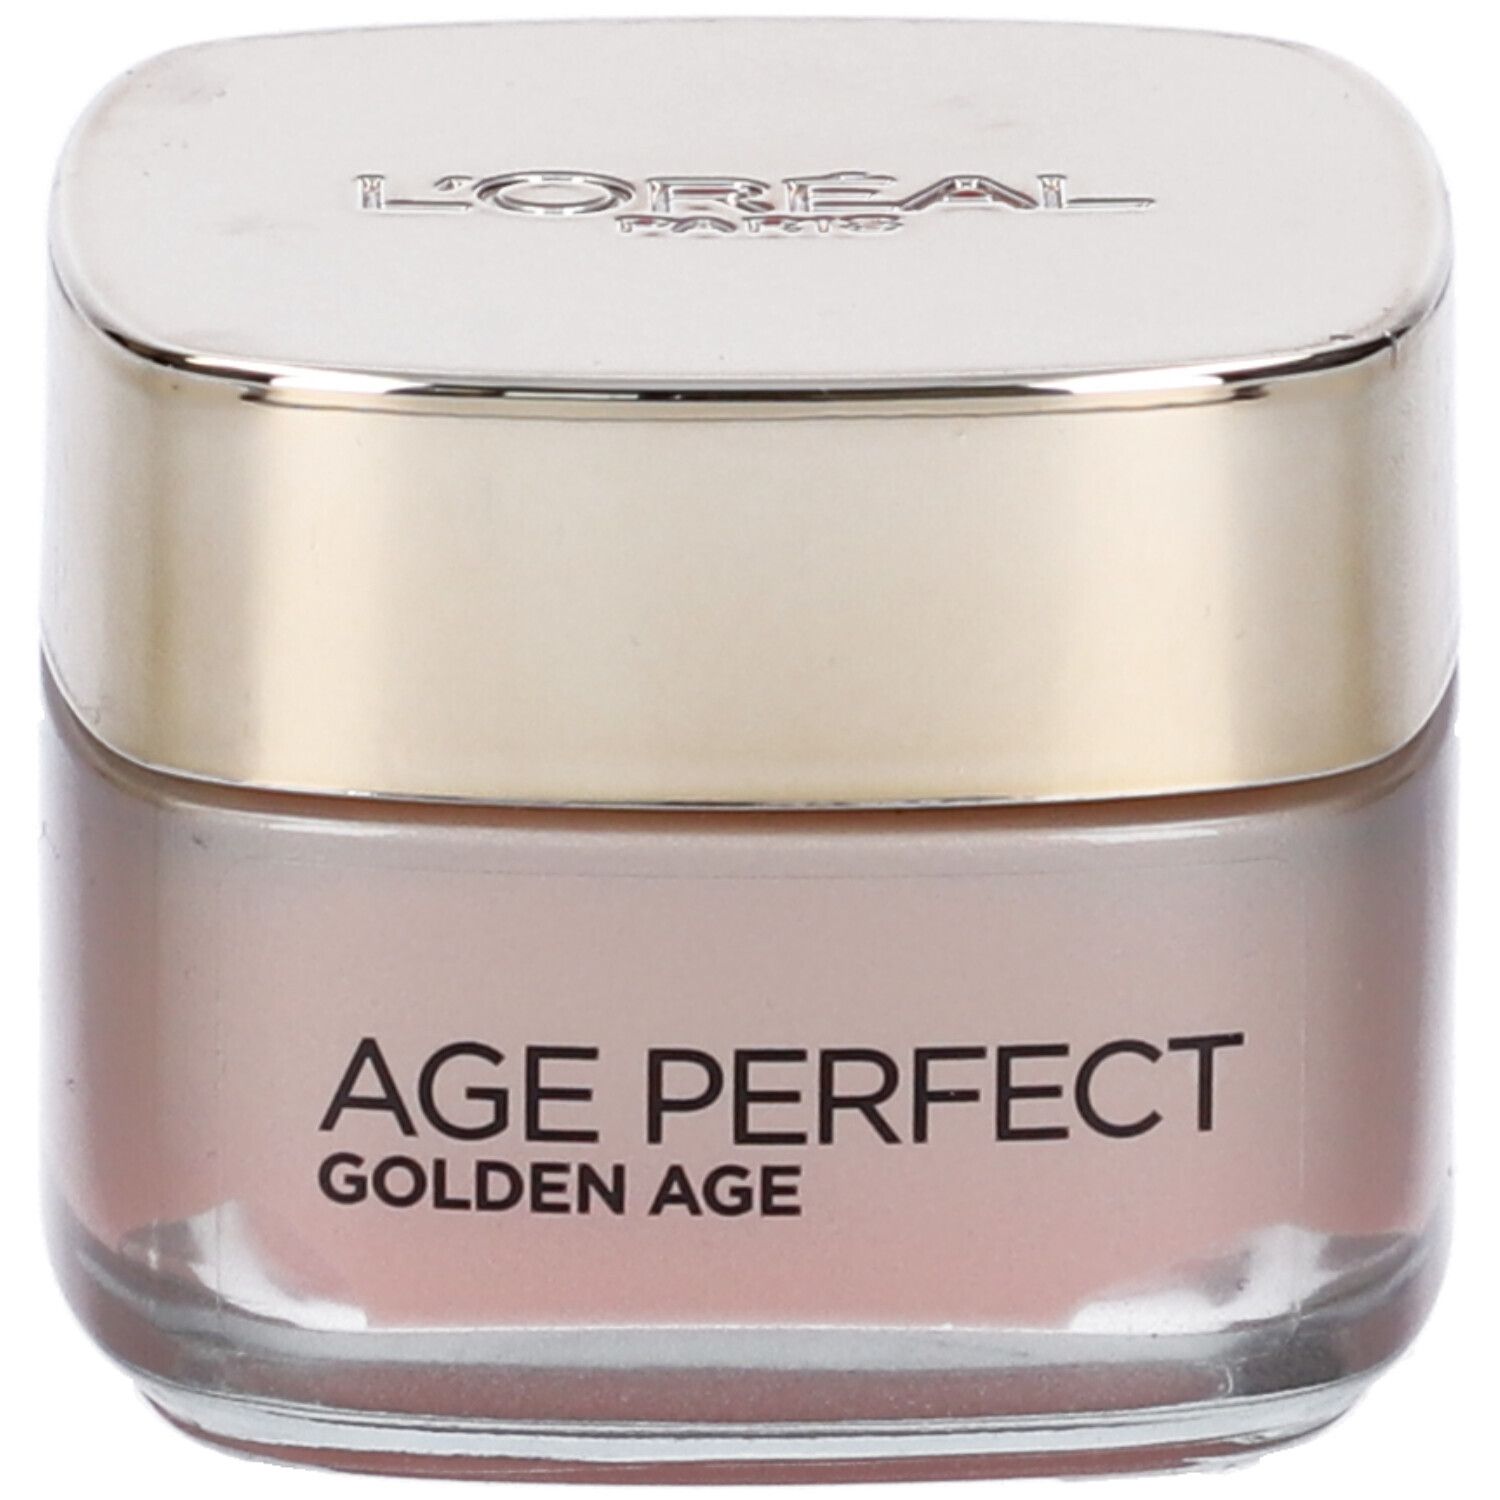 Image of L'Oréal Paris Crema Viso Giorno Age Perfect Golden Age, Trattamento Fortificante, Adatto a Pelli Mature, 50 ml